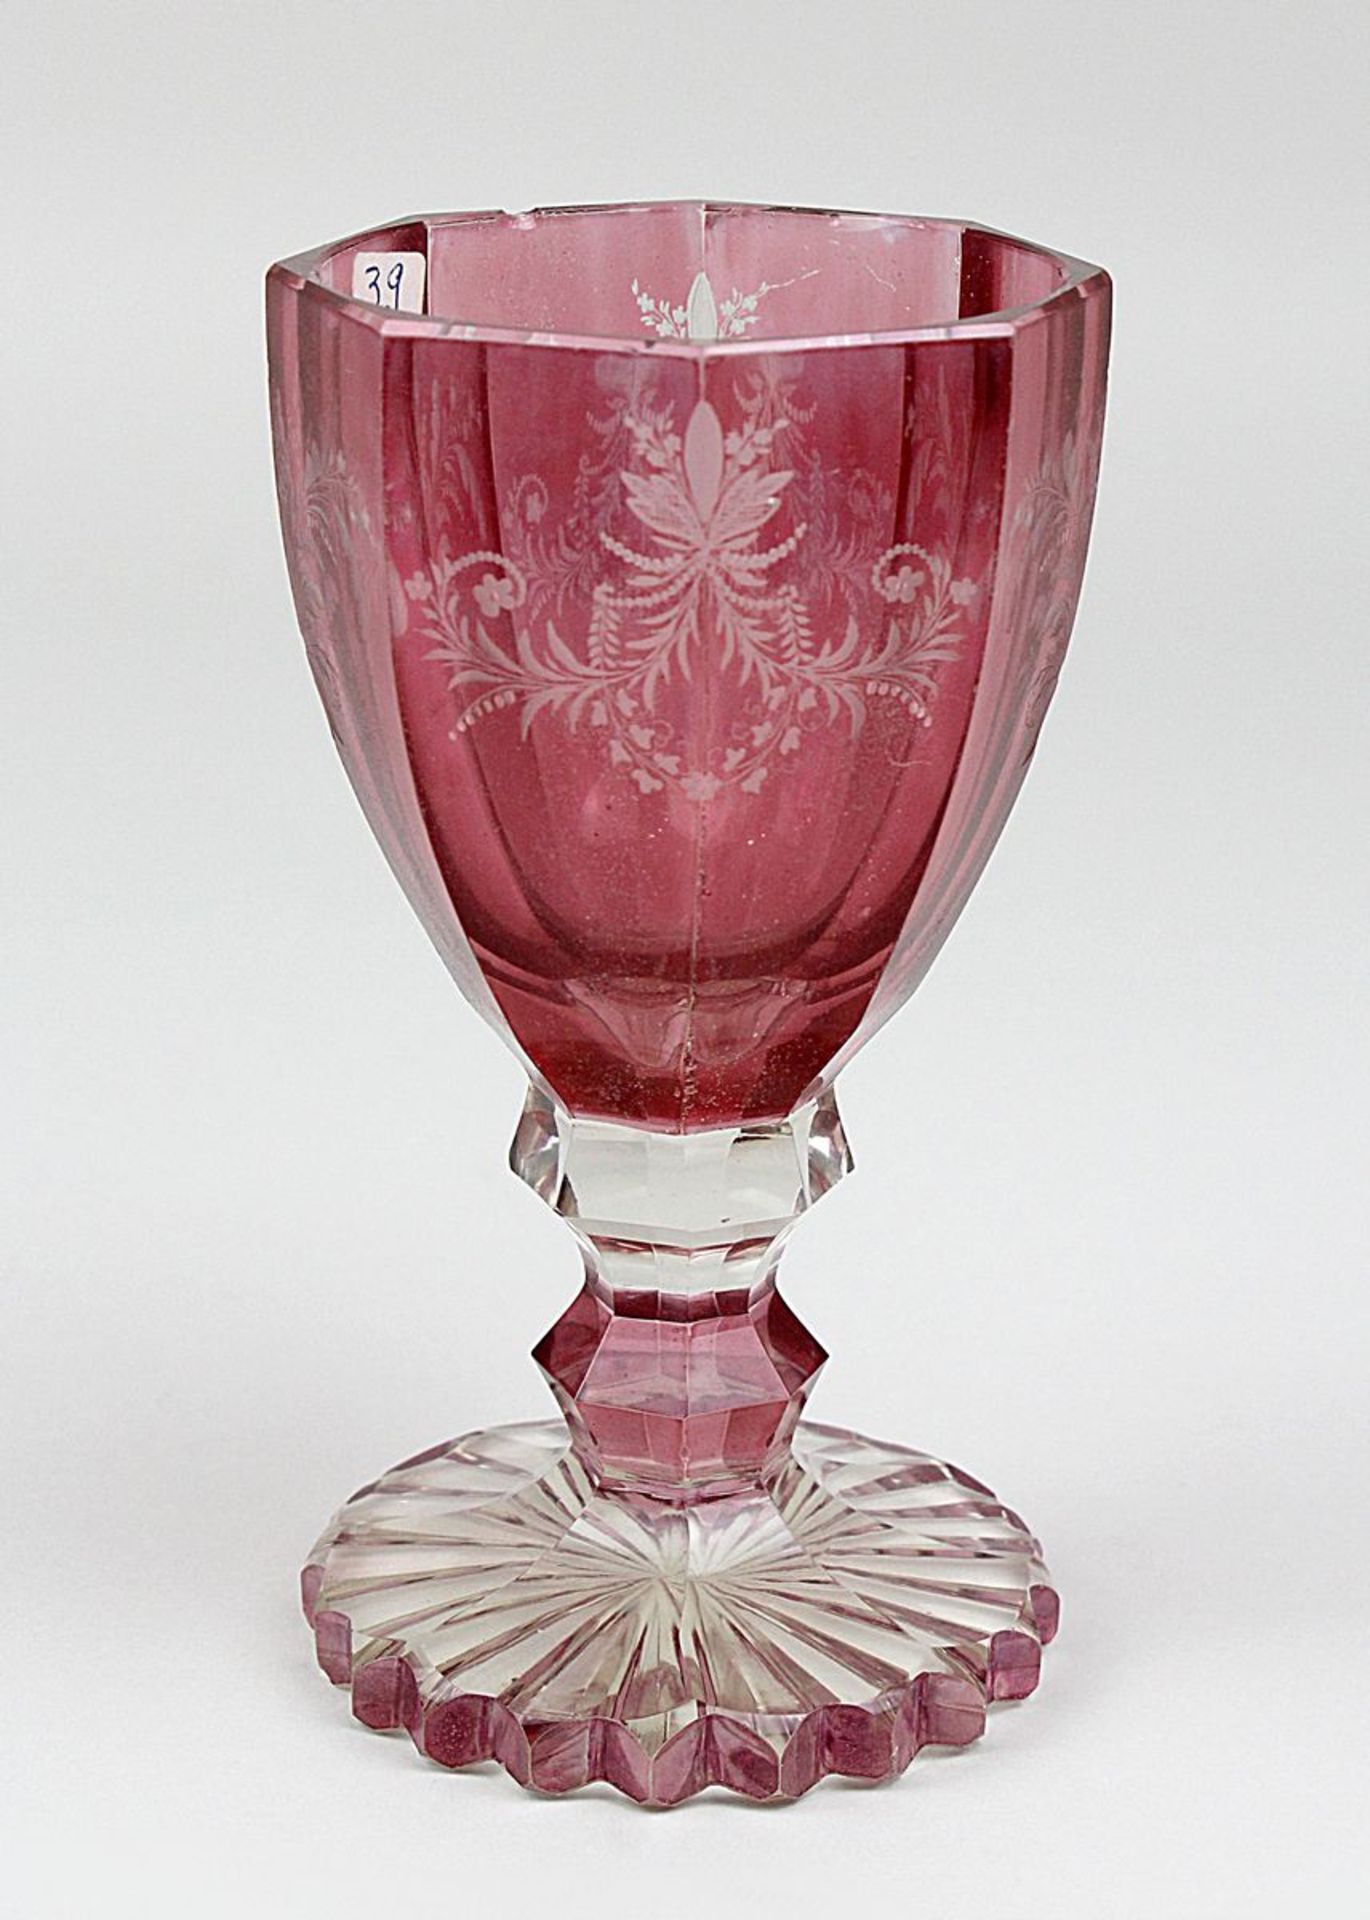 Pokalglas, Böhmen, um 1880, Klarglas, rosa-rot gebeizt, Fuß mit Sternschliff, Fuß, Schaft und